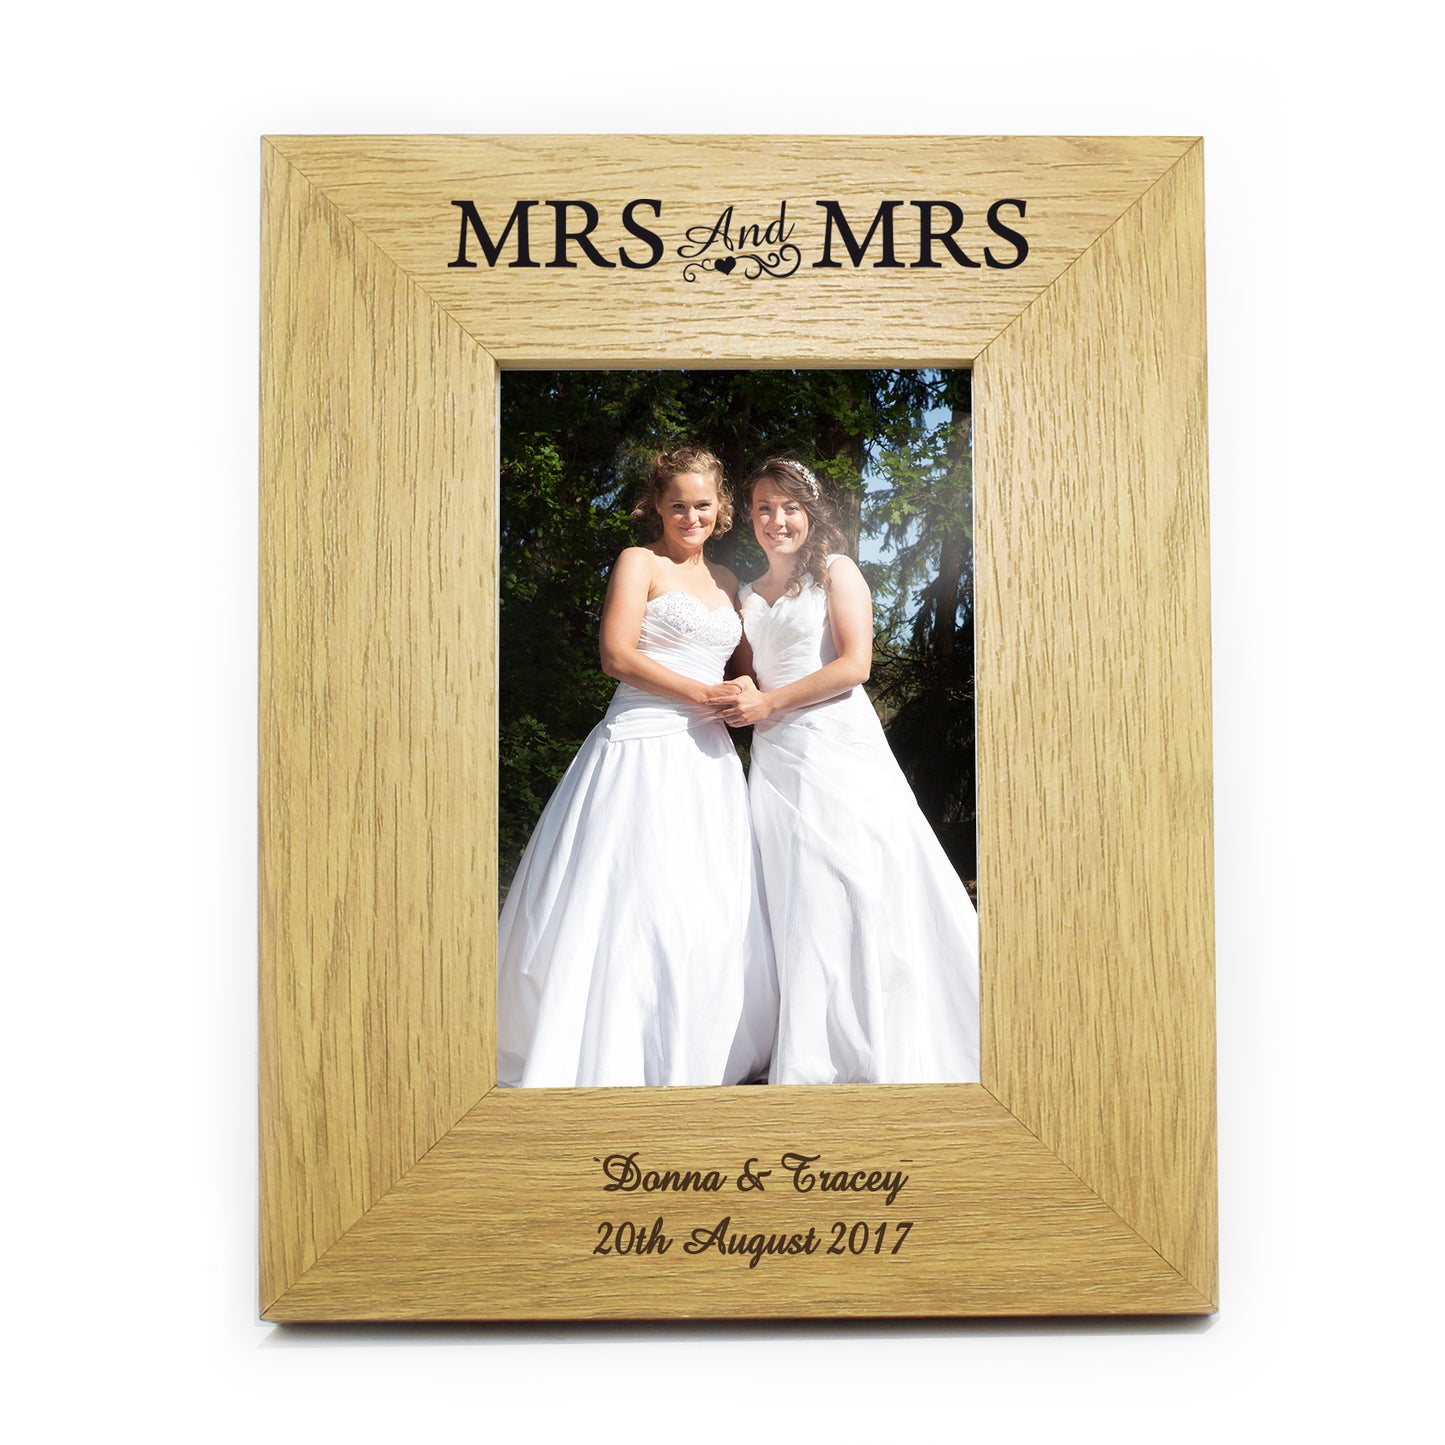 Personalised Oak Finish 4x6 Mrs & Mrs Photo Frame - Personalise It!